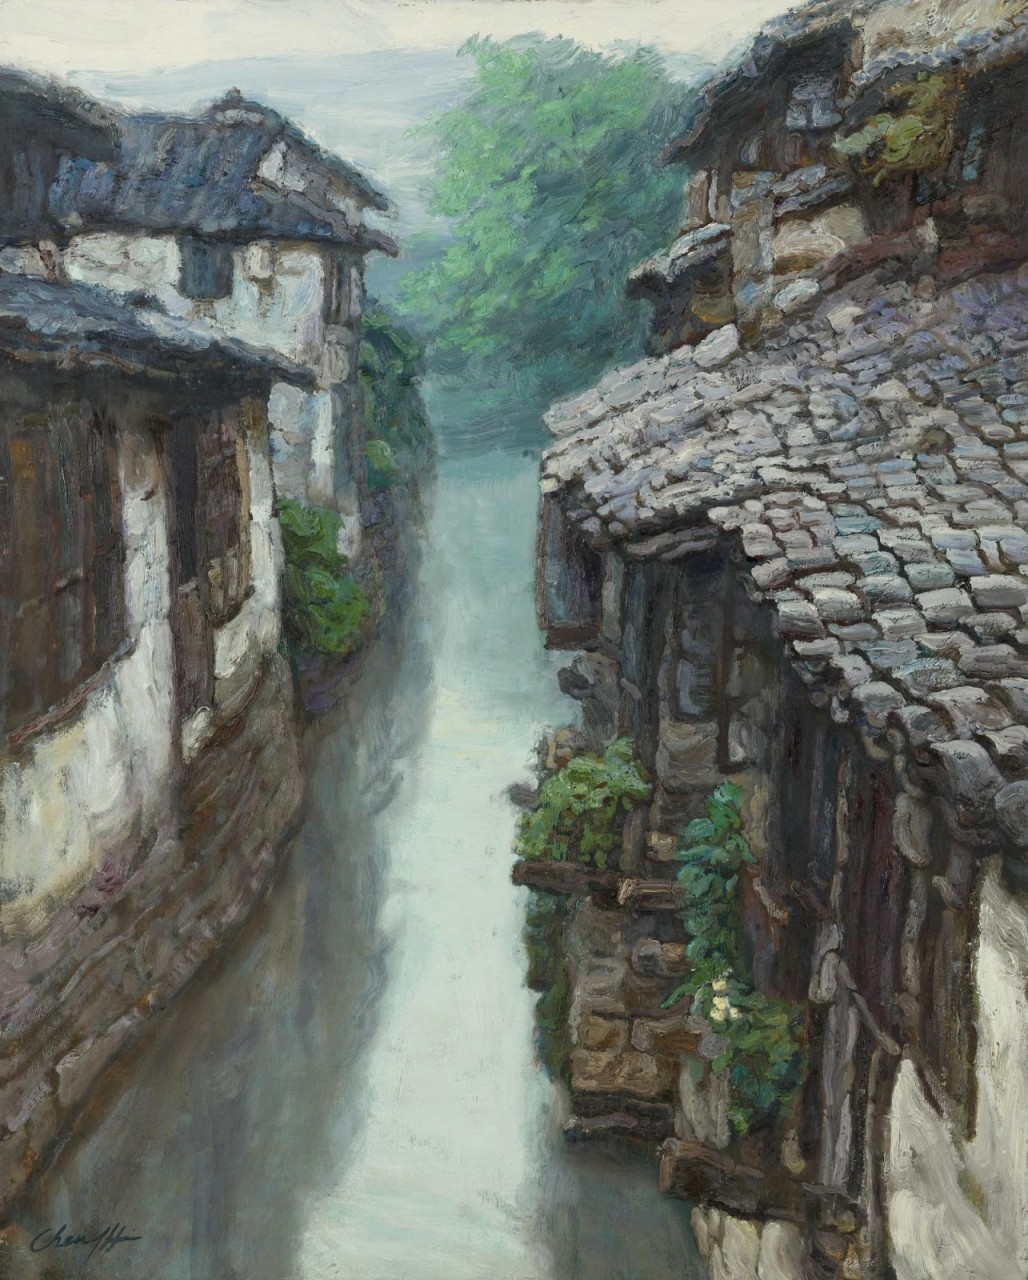 Как качаются ветки, как скользят челноки... Китайский художник Chen Yifei (1946 - 2005)